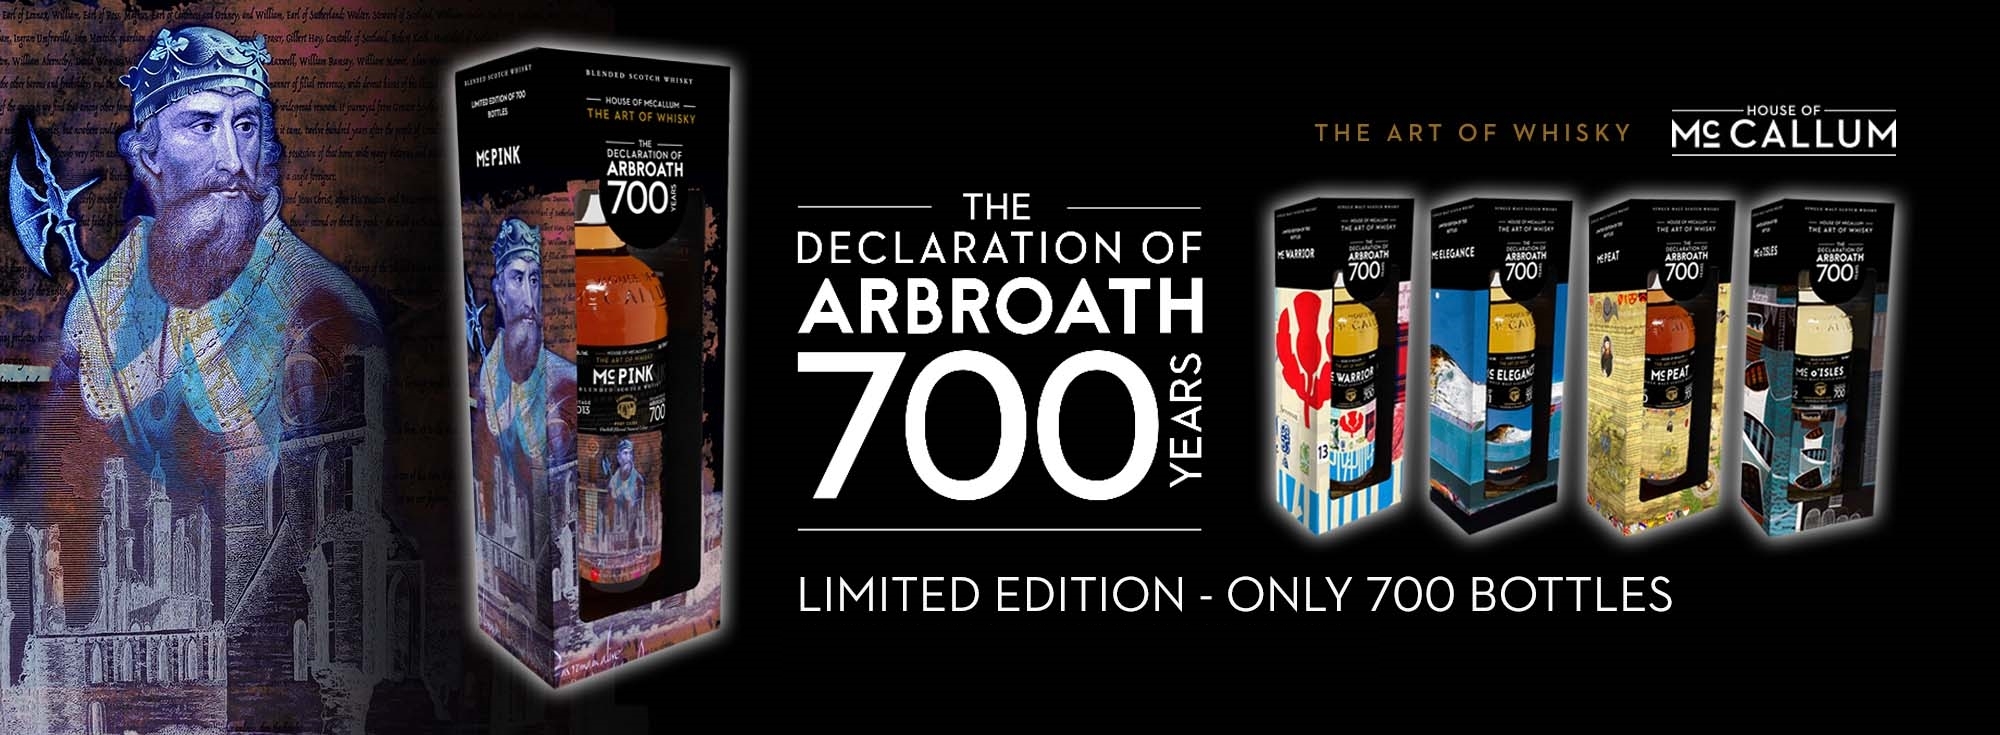 麥卡勒姆蘇格蘭威士忌阿布羅斯宣言700周年限量套組